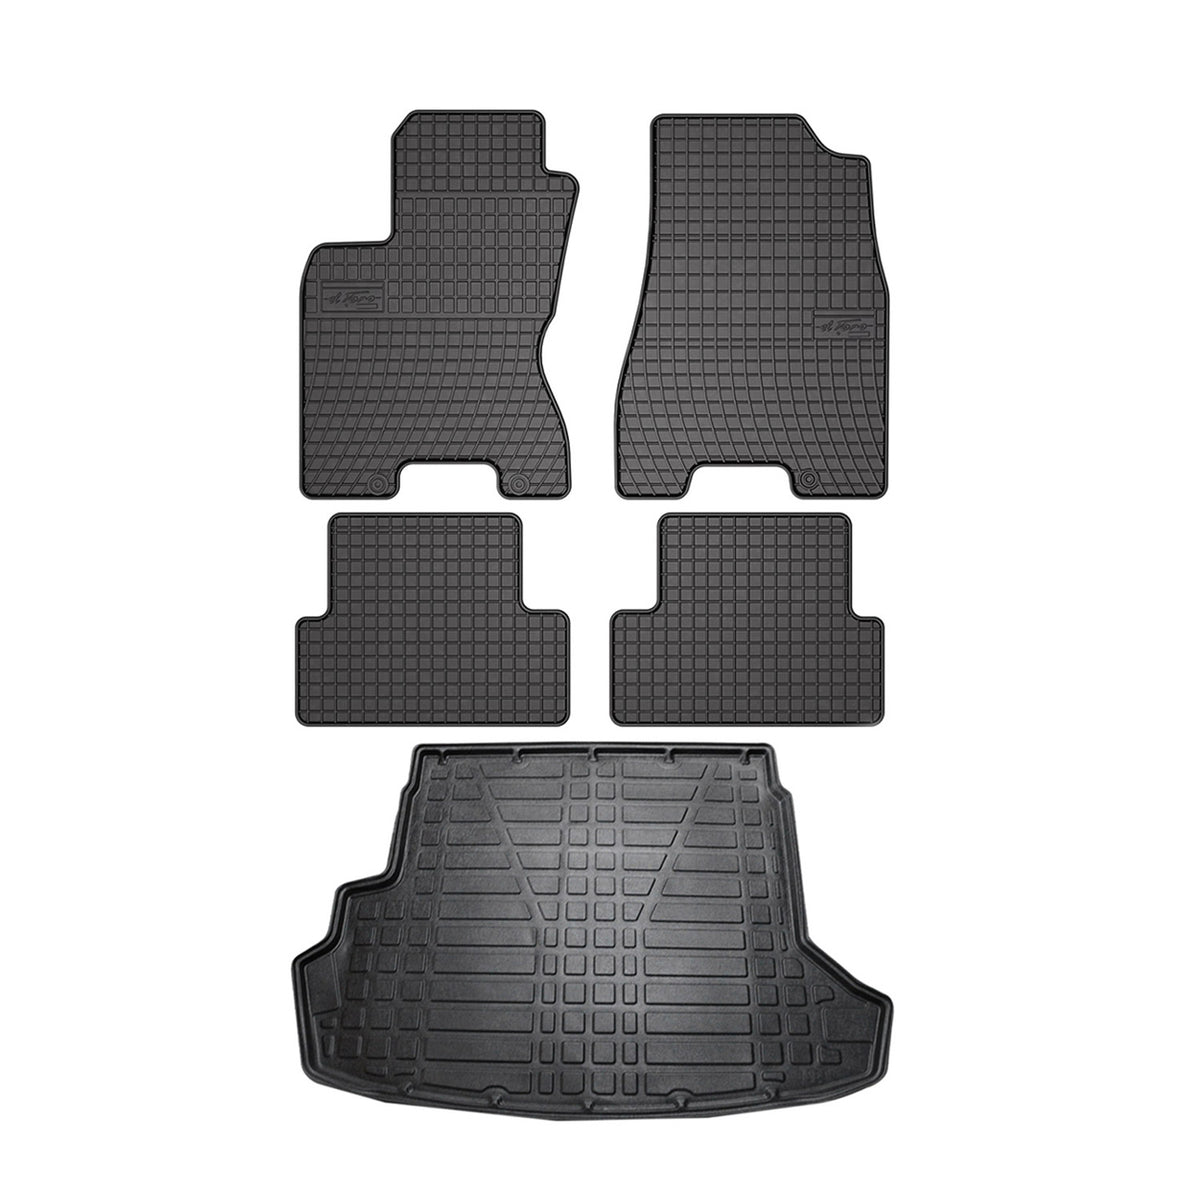 Fußmatten & Kofferraumwanne Set für Nissan X-Trail T31 2007-2014 Gummi TPE 5x